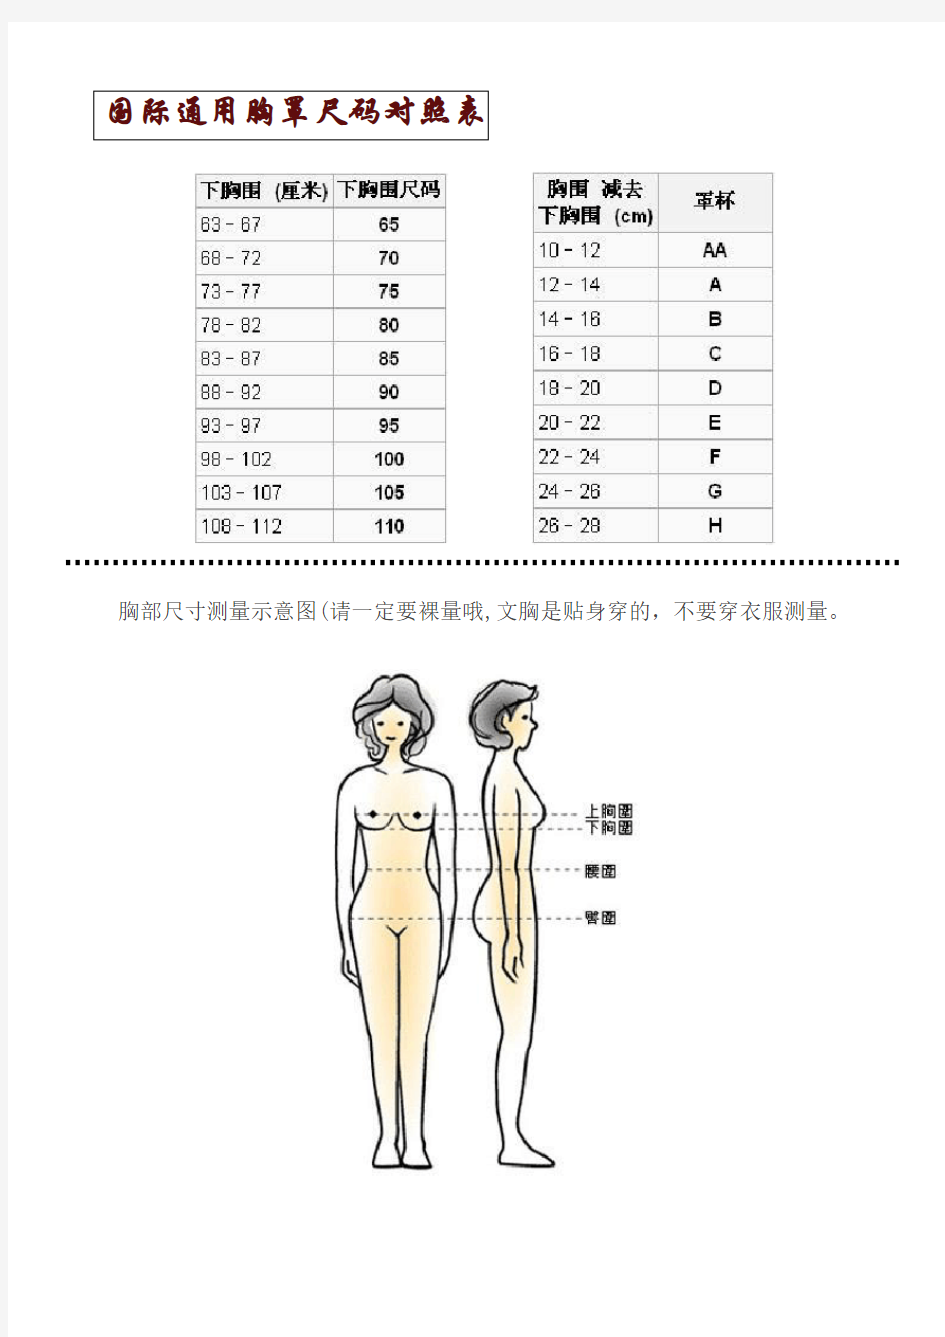 国际通用胸罩尺码对照表-及其他(DOC)